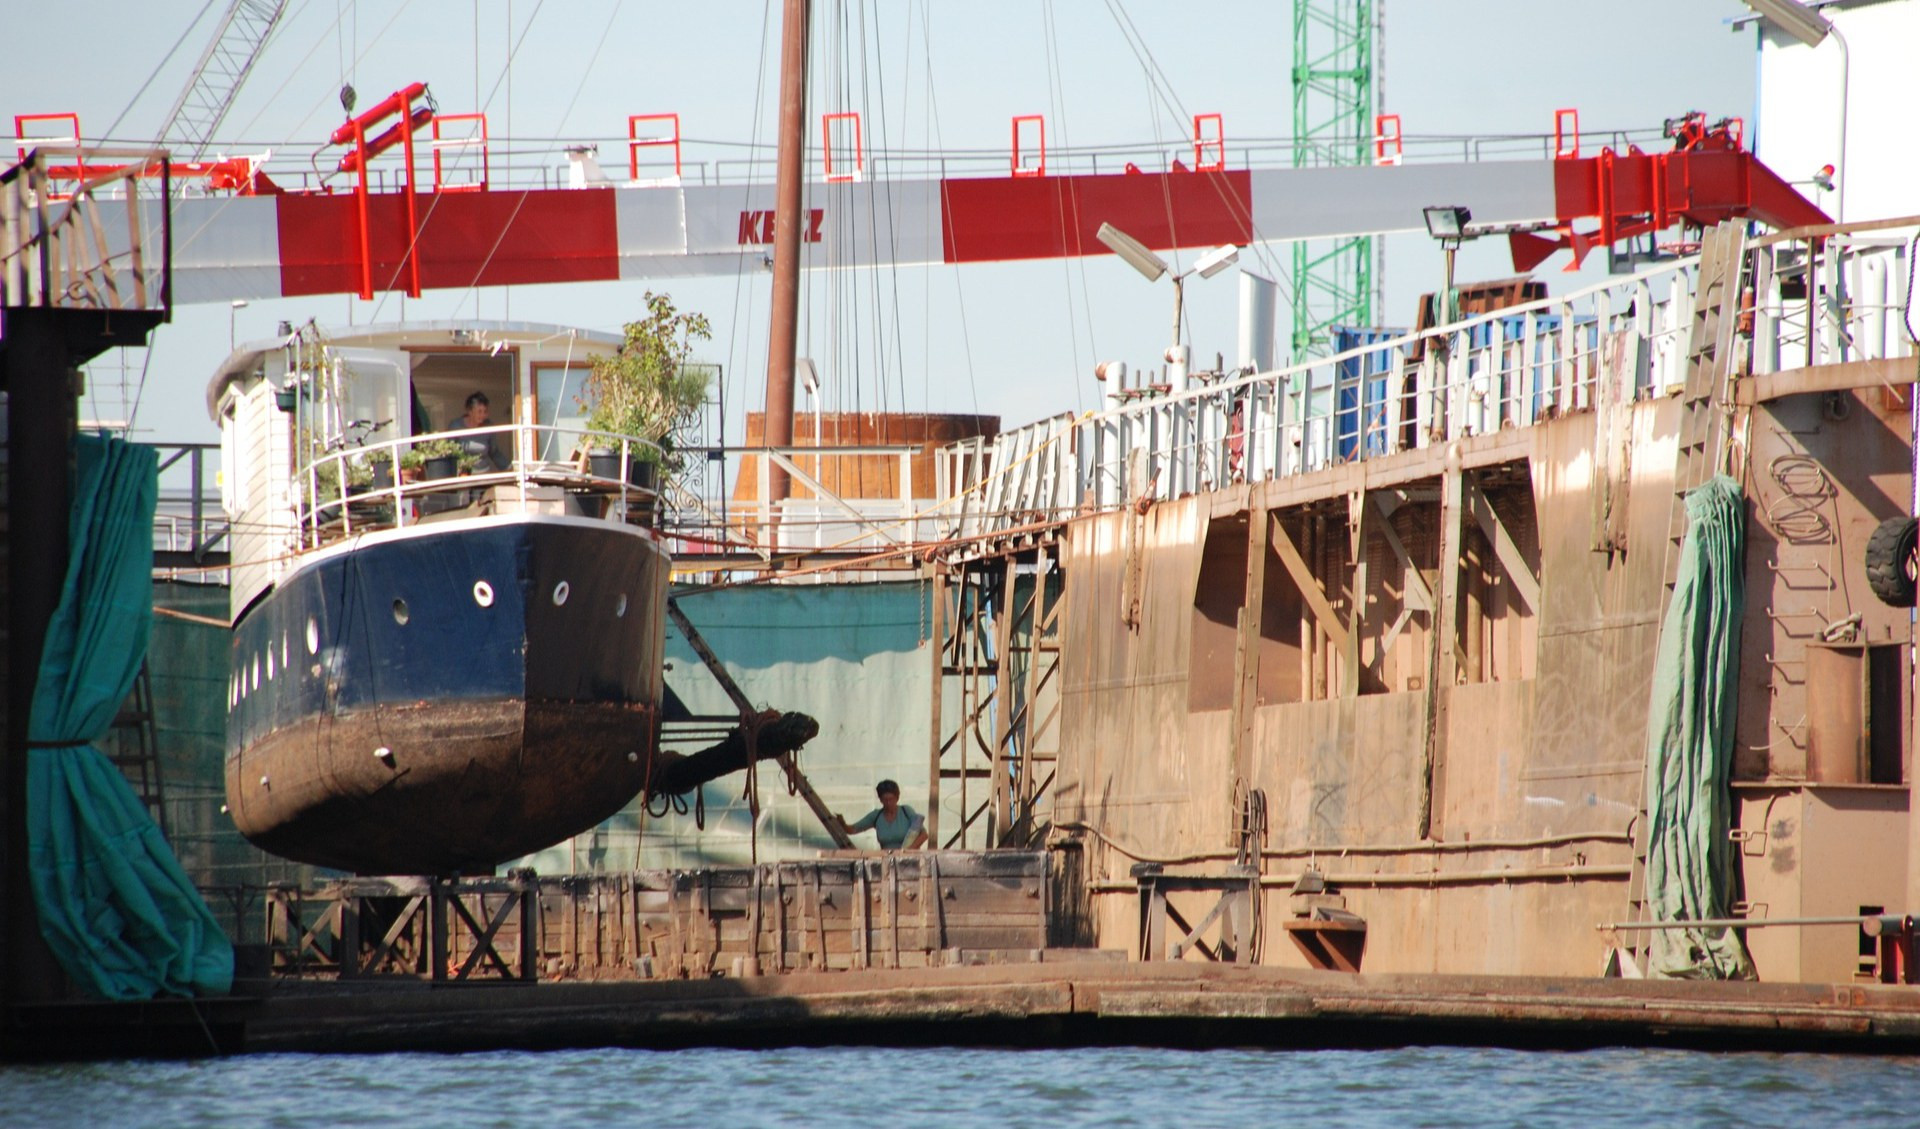 Tunnel subportuale e impatto su riparazioni navali: assemblea in porto